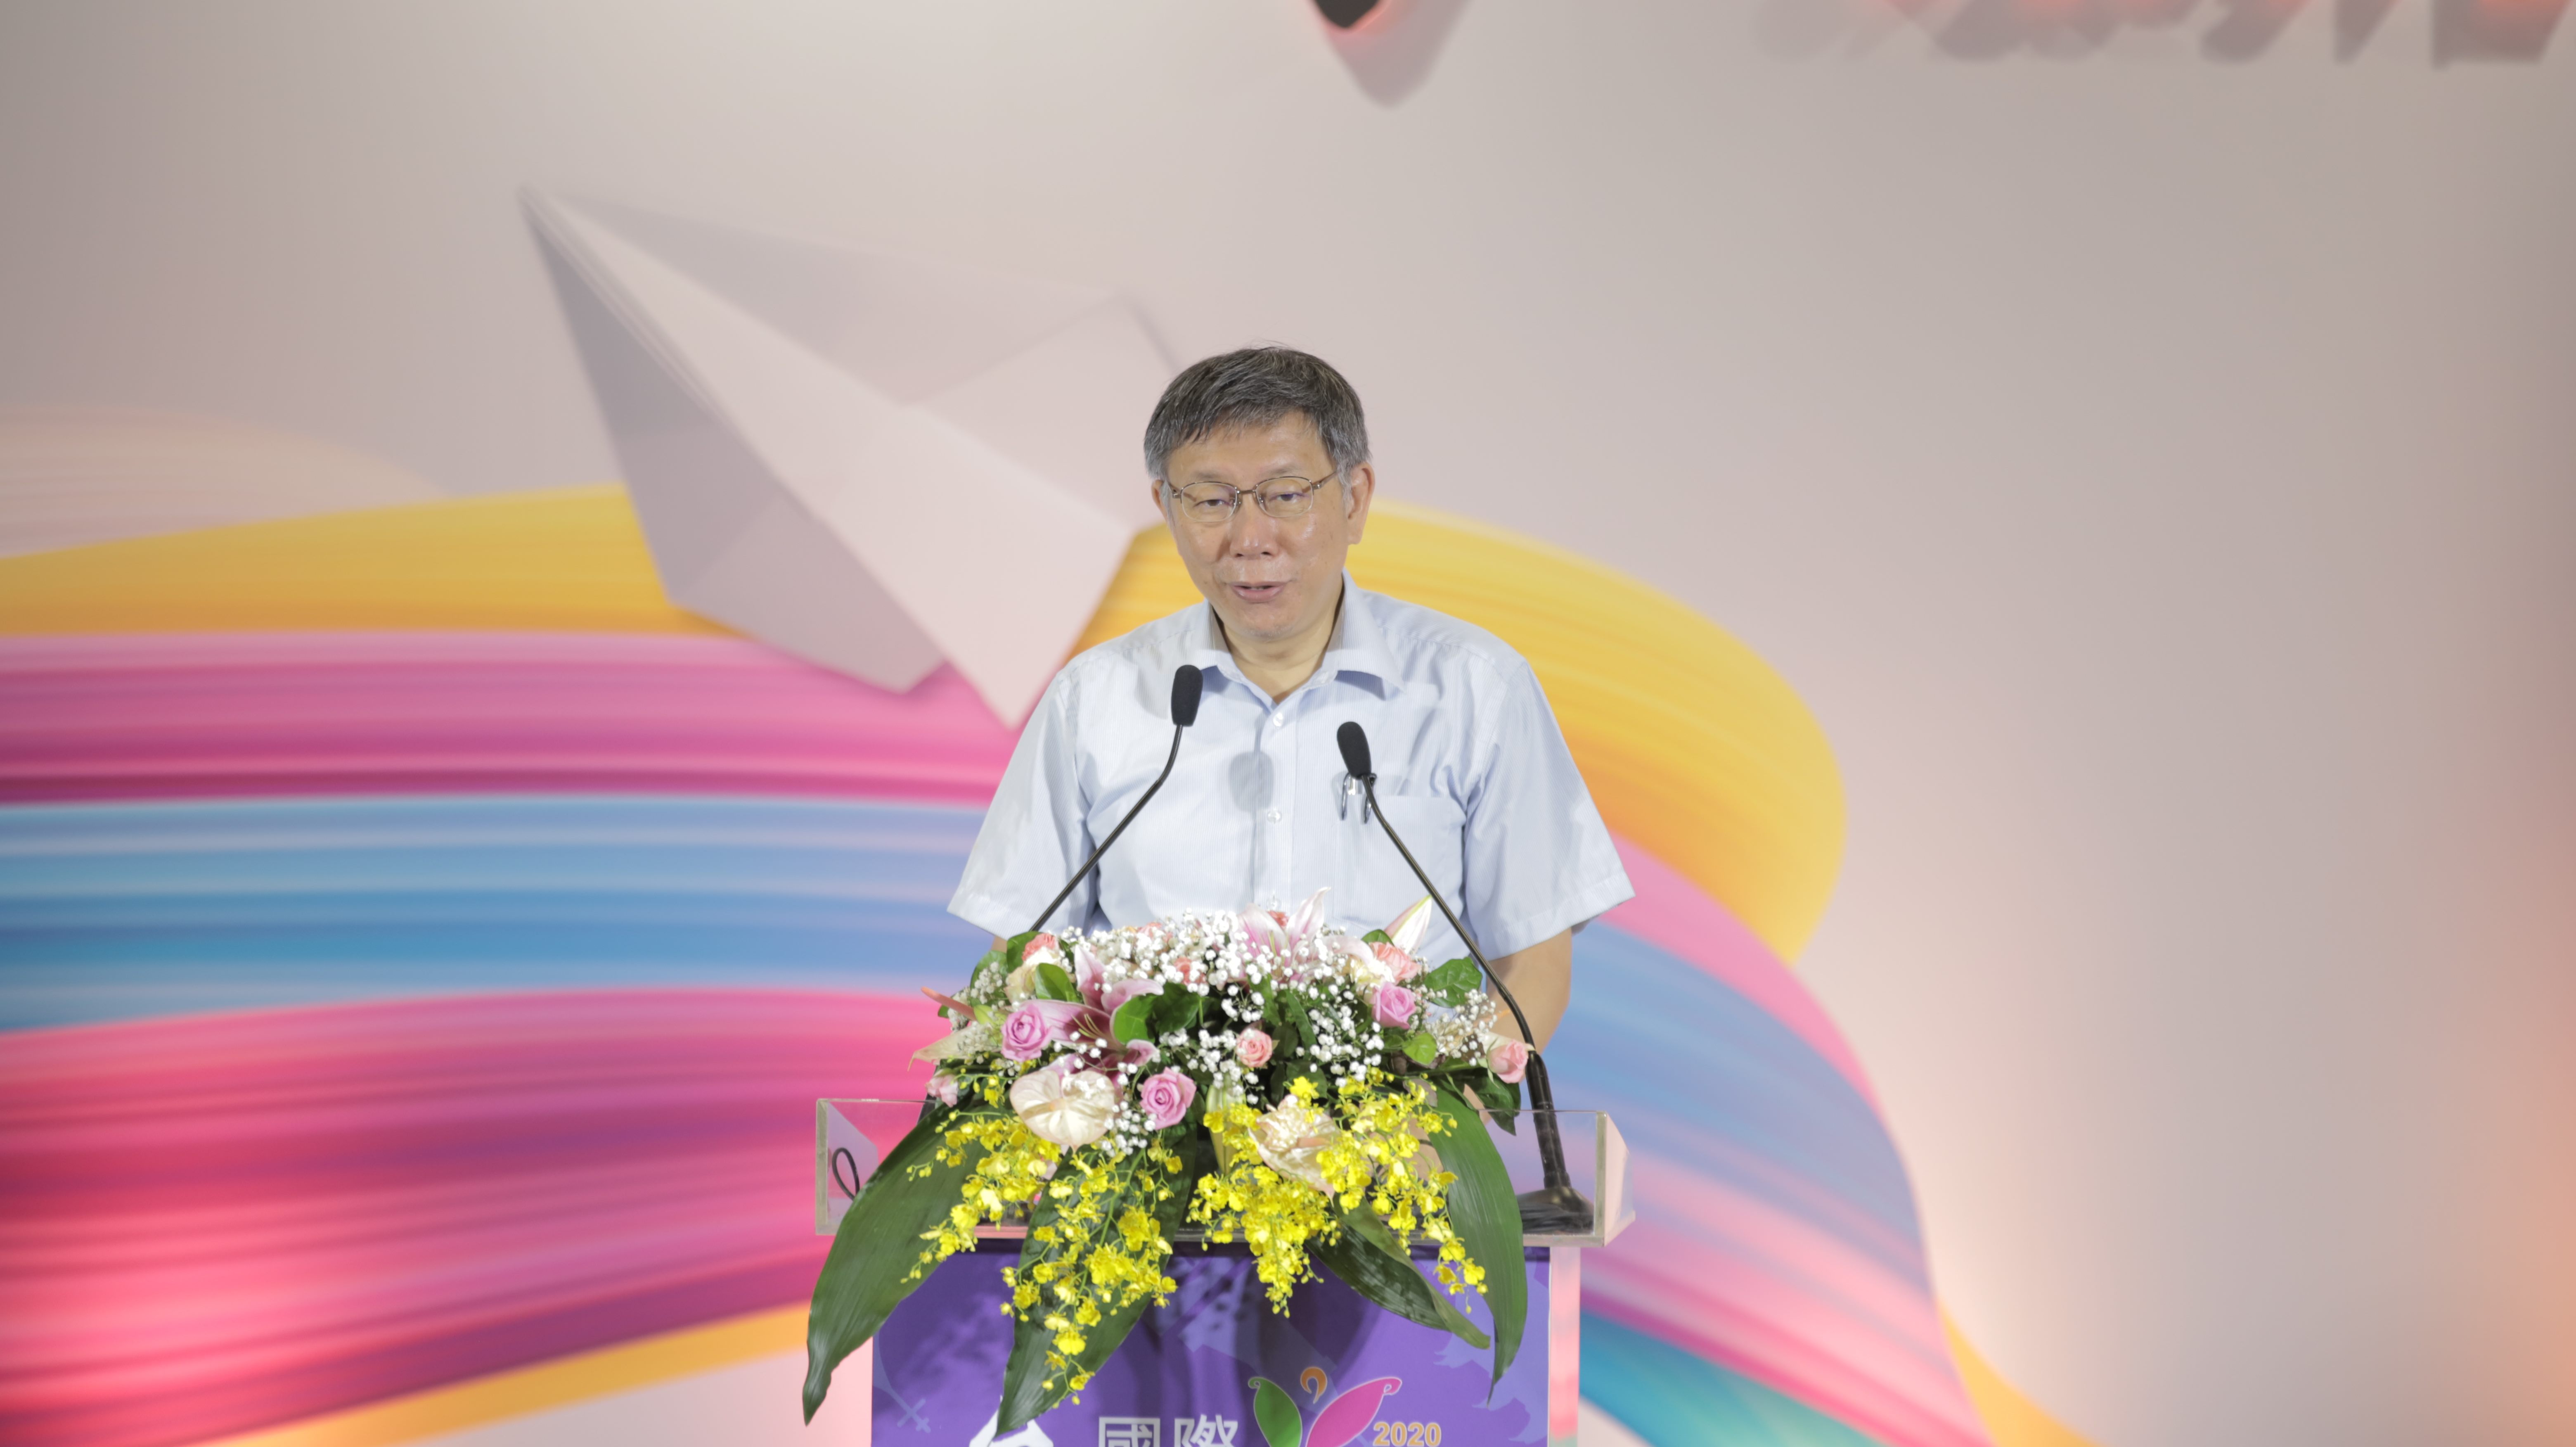 臺北國際觀光博覽會邀請台北市長柯文哲致詞。